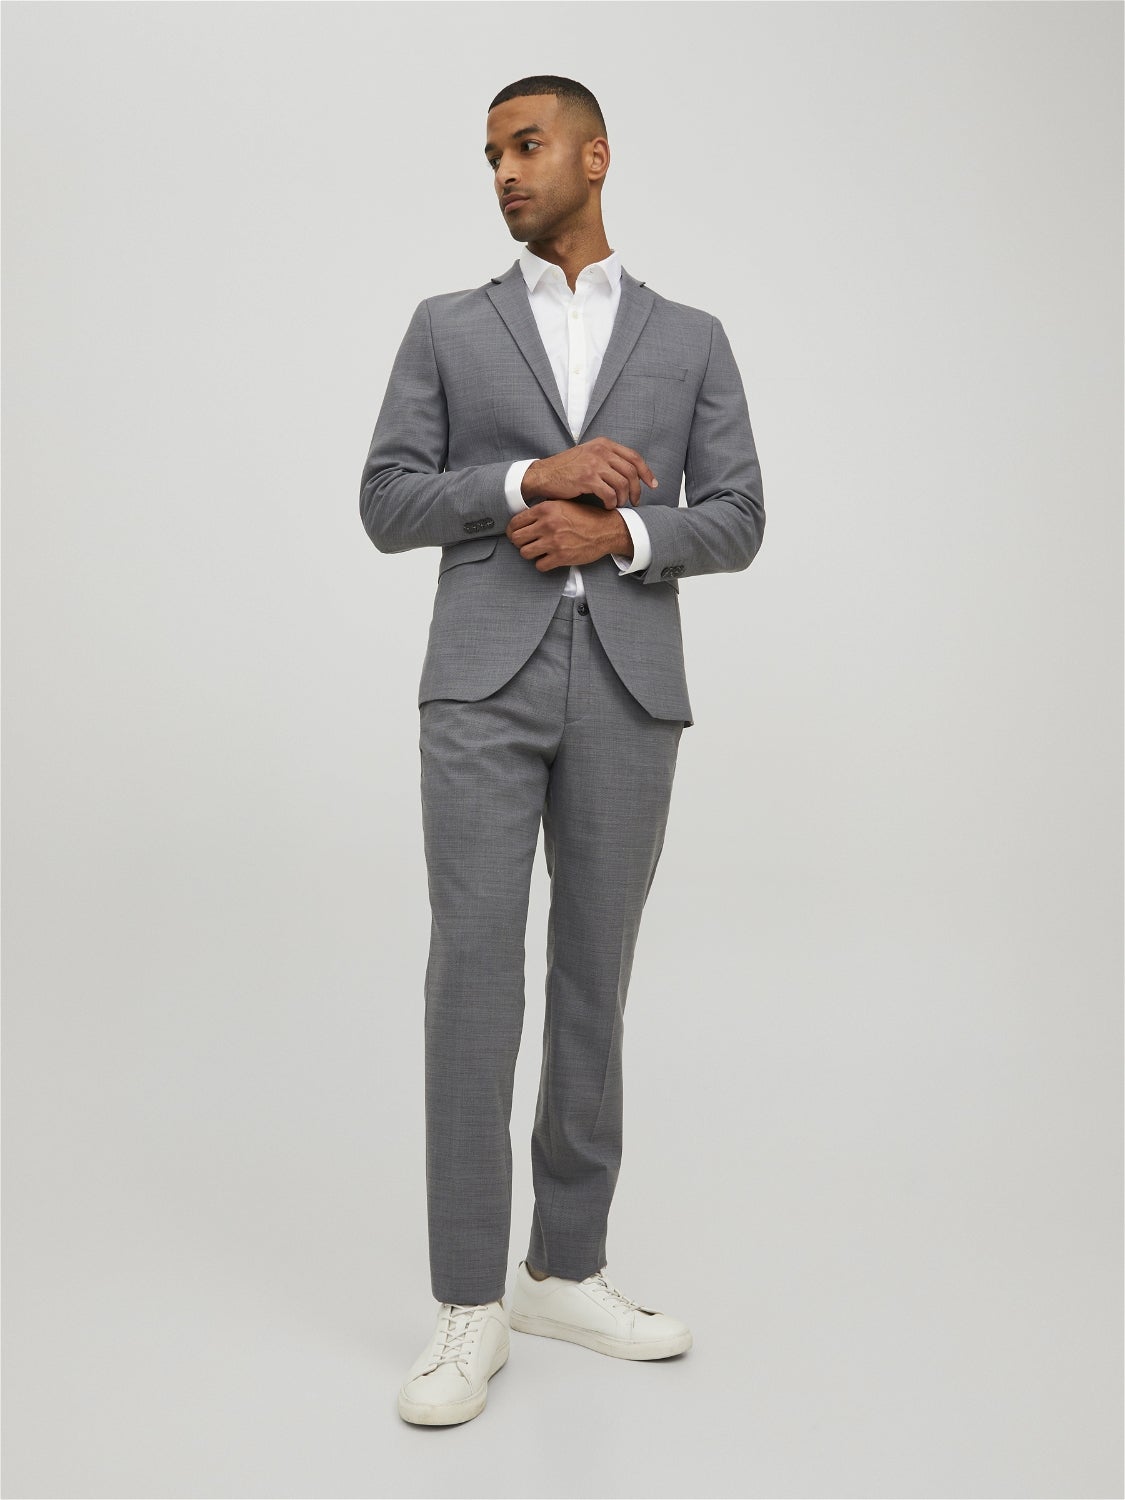 JPRSOLARIS Super Slim Fit Suit